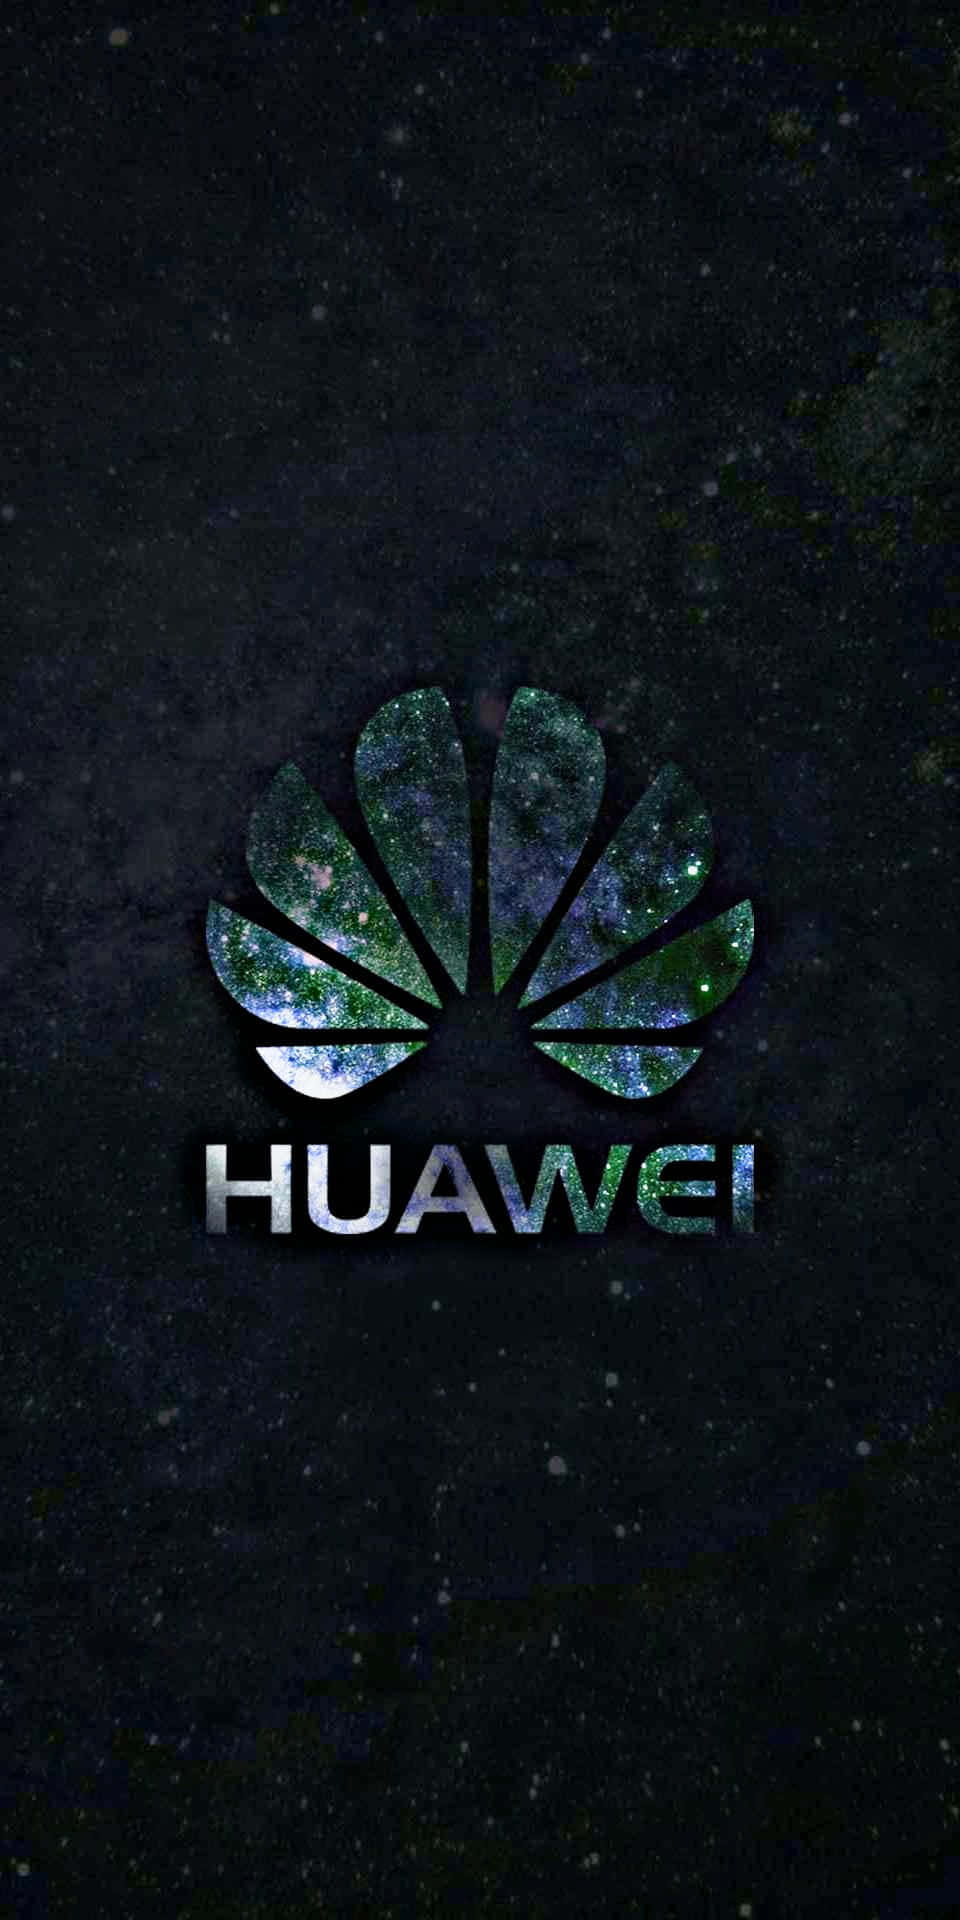 Introducererdet Næste Niveau Inden For Innovation Og Teknologi: Huawei.